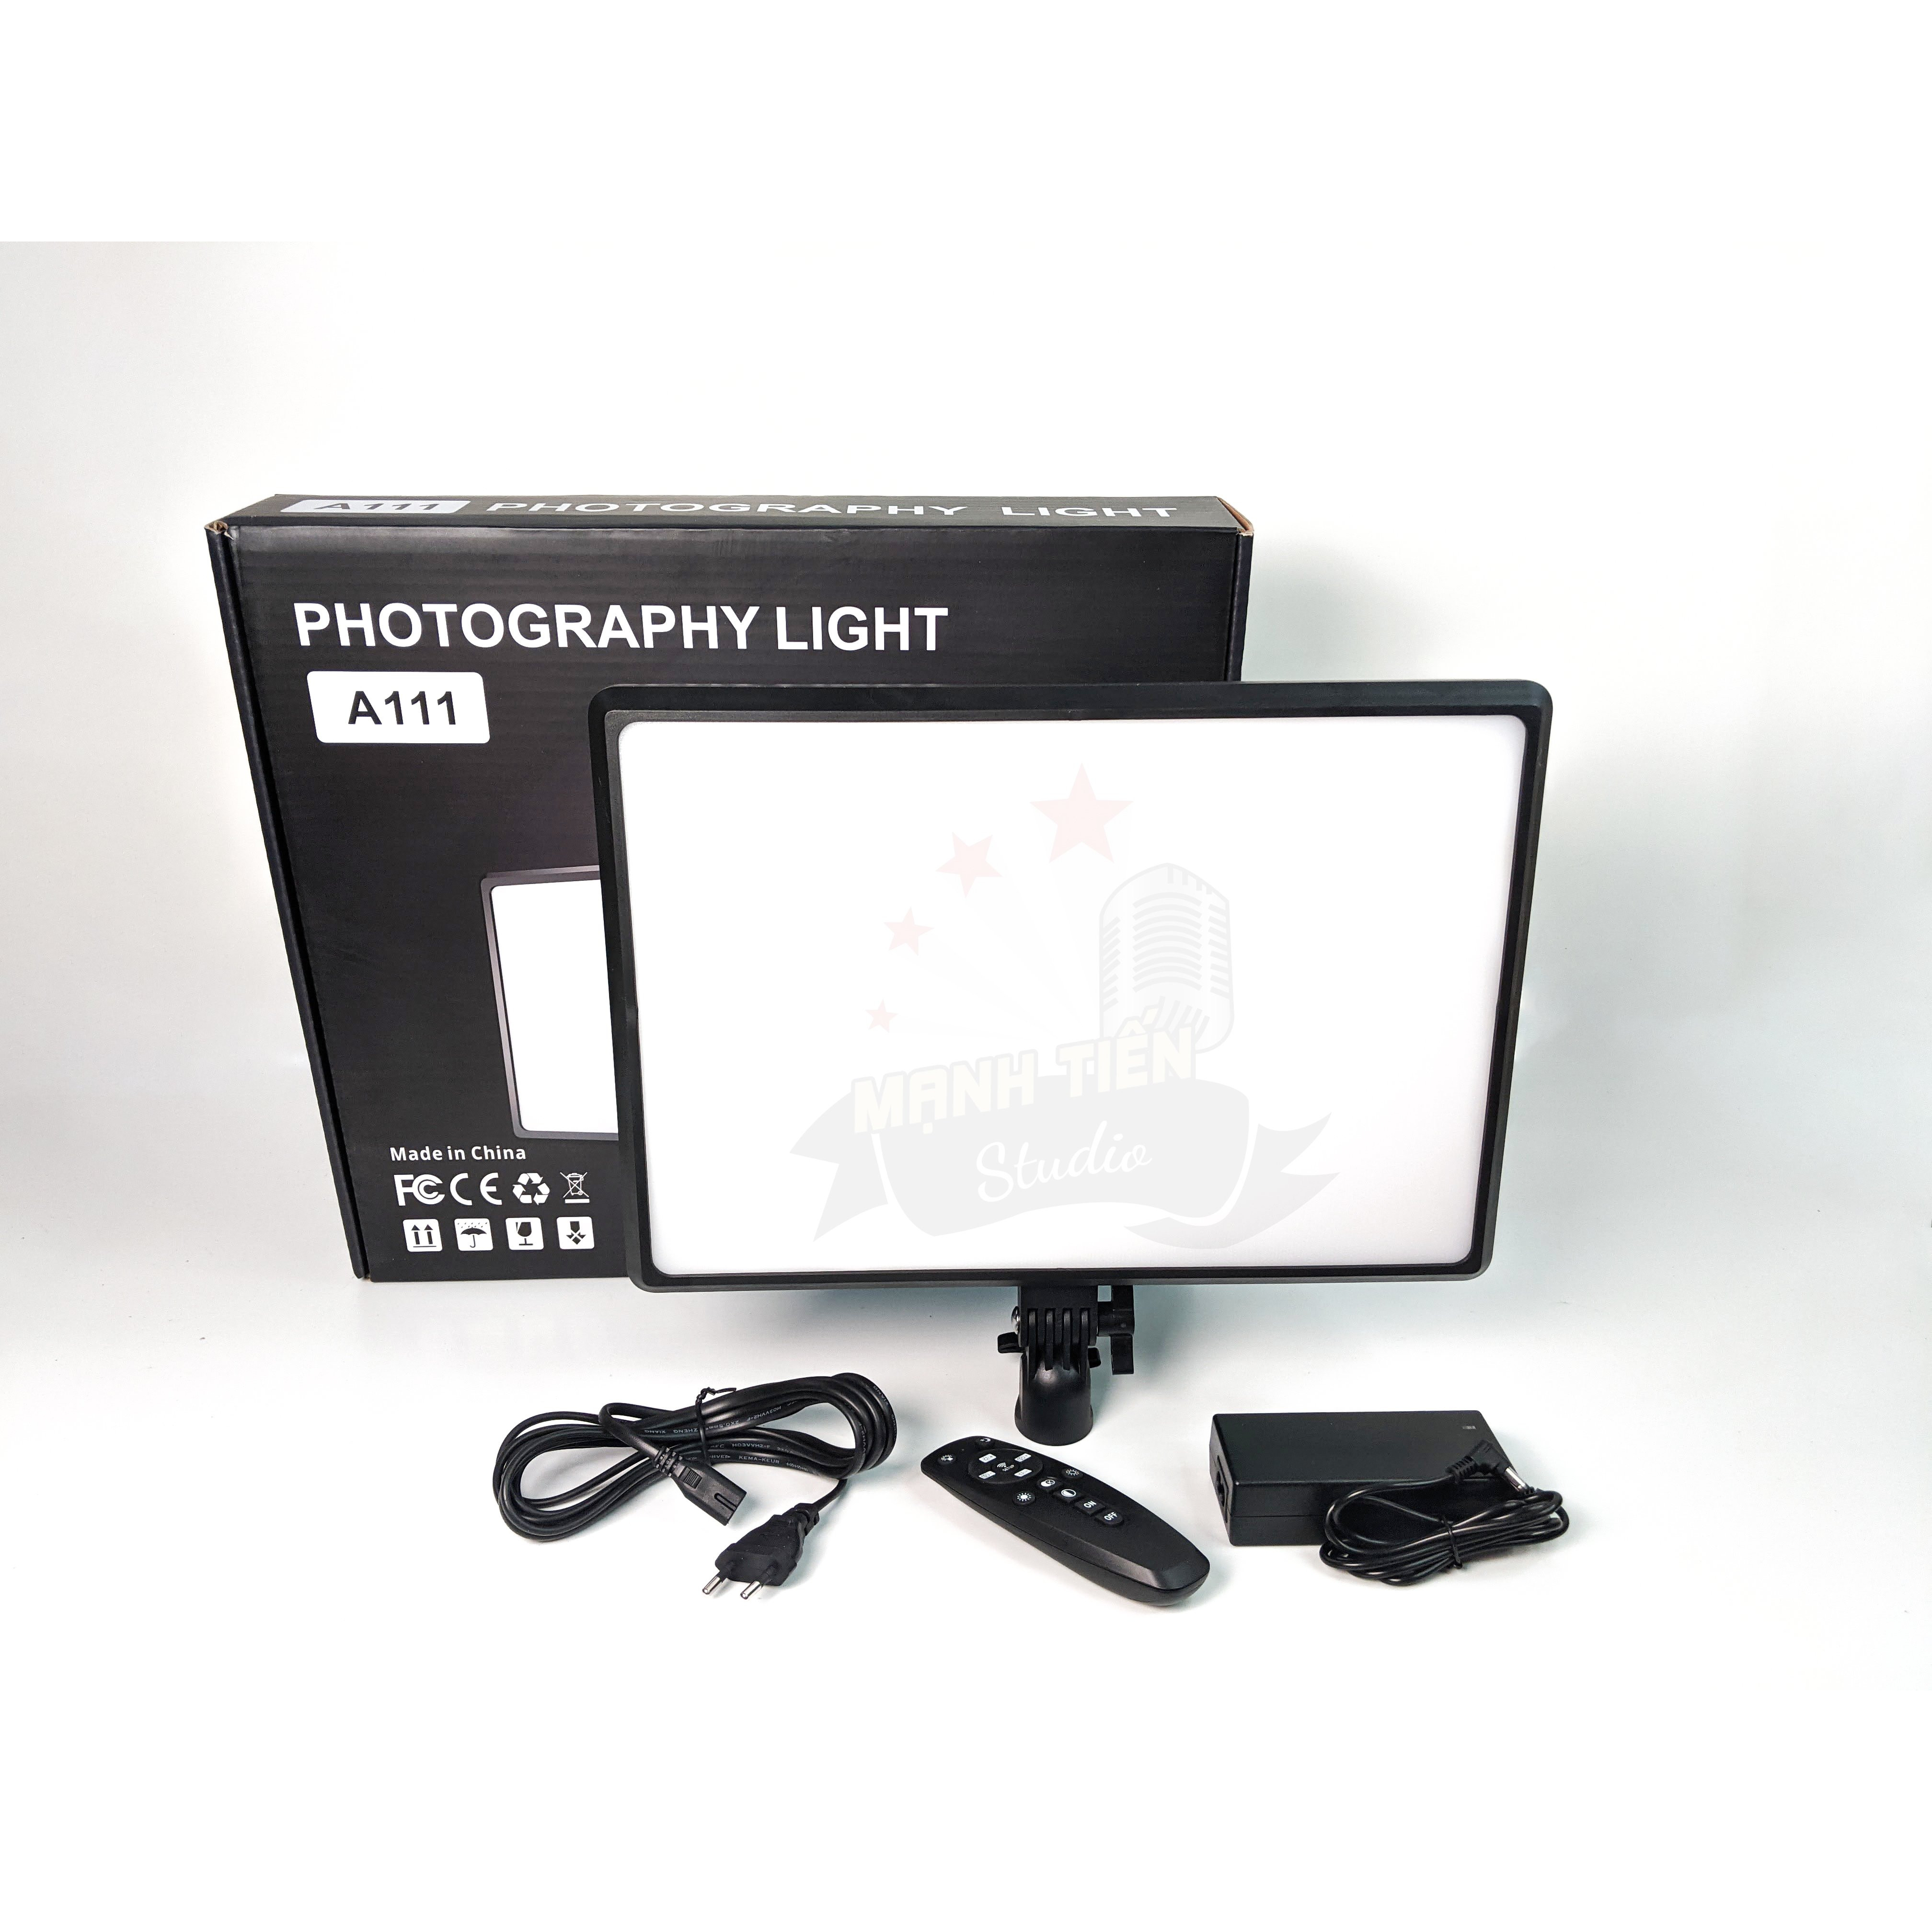 Đèn studio A111 - Hỗ trợ chụp ảnh chuyên nghiệp - Photography light - Đèn hỗ trợ livestream, chụp ảnh, quay phim 3 chế độ sáng ( 3600K - 6000K) - Công suất 100W - Có remote